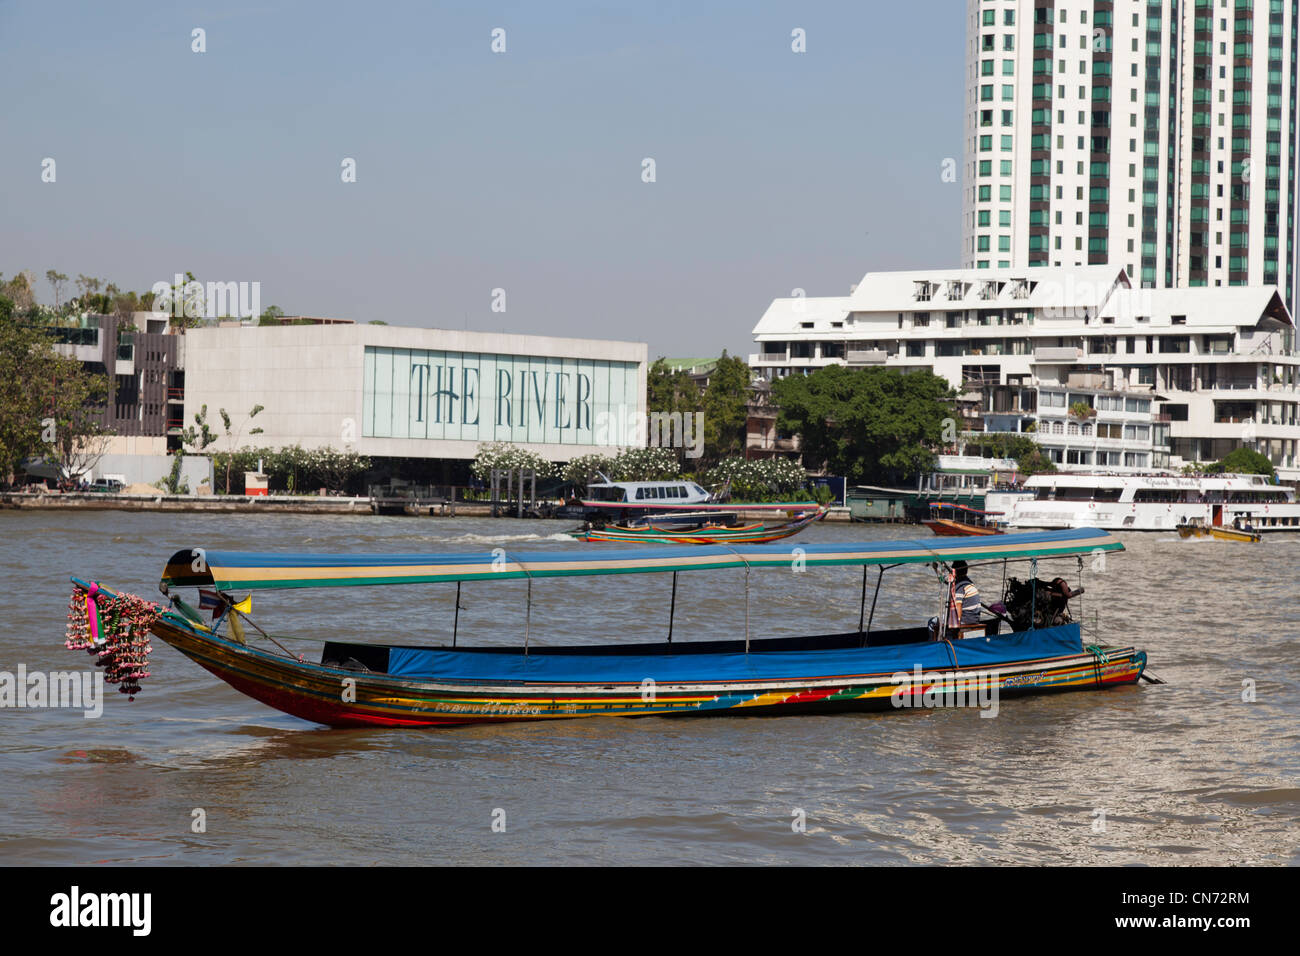 Ein Longtail-Boot auf der Suche nach Touristen auf dem Chao Phraya River (Bangkok). Bateau Dit "À Longue Queue" Sur le Fleuve Chao Phraya Stockfoto